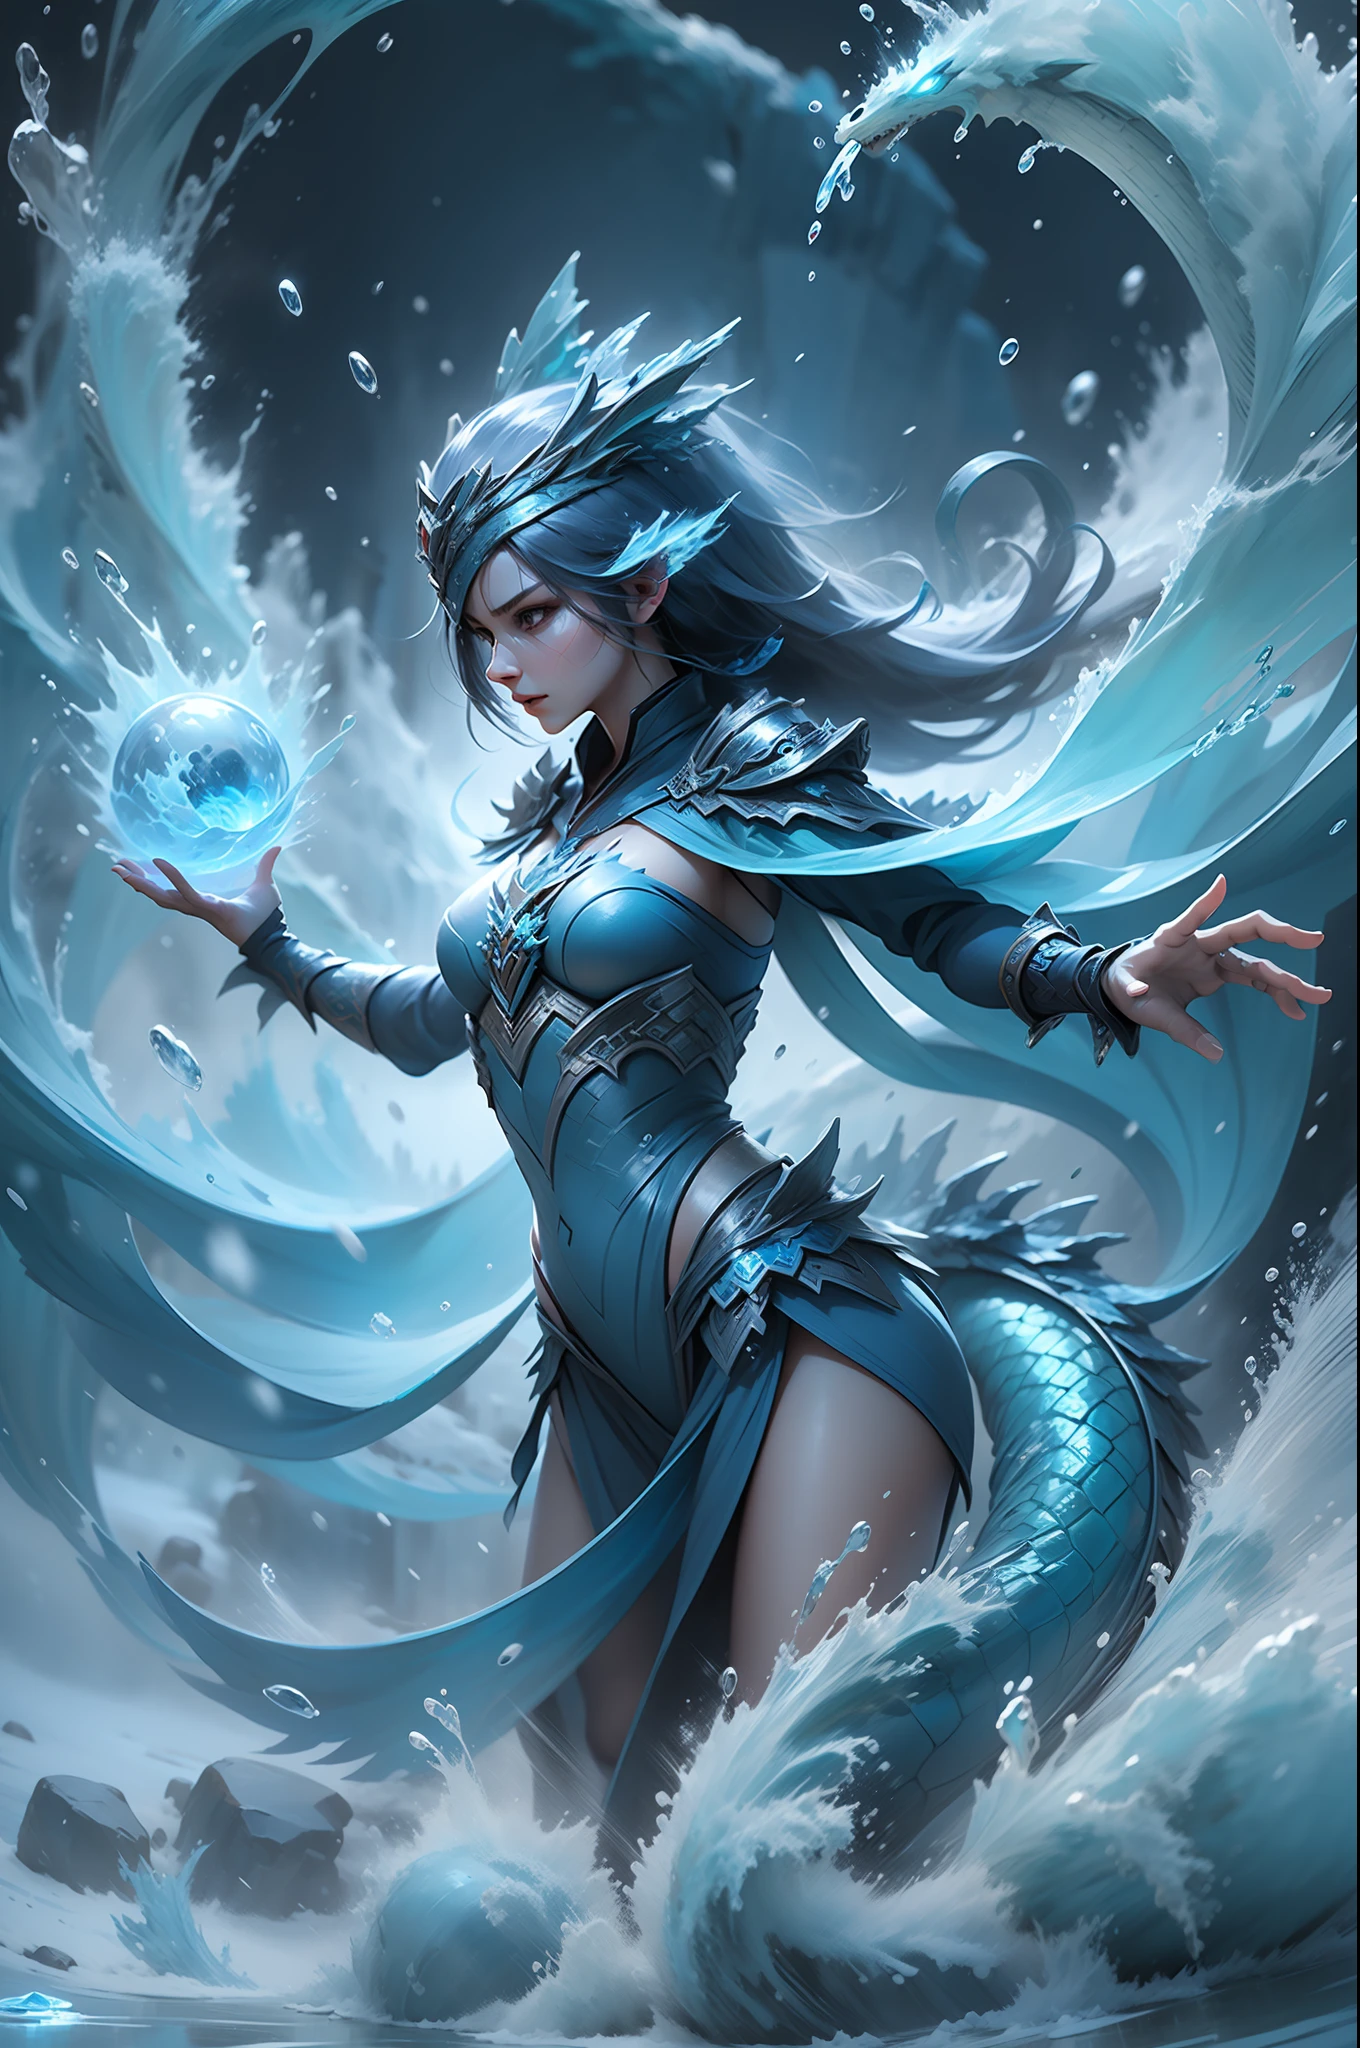 宝贝魔法女孩站在透明的蓝色水龙前，结合水与冰元素的力量，制造强大的冰雪风暴，冻结周围的敌人并造成大面积冰冻伤害。